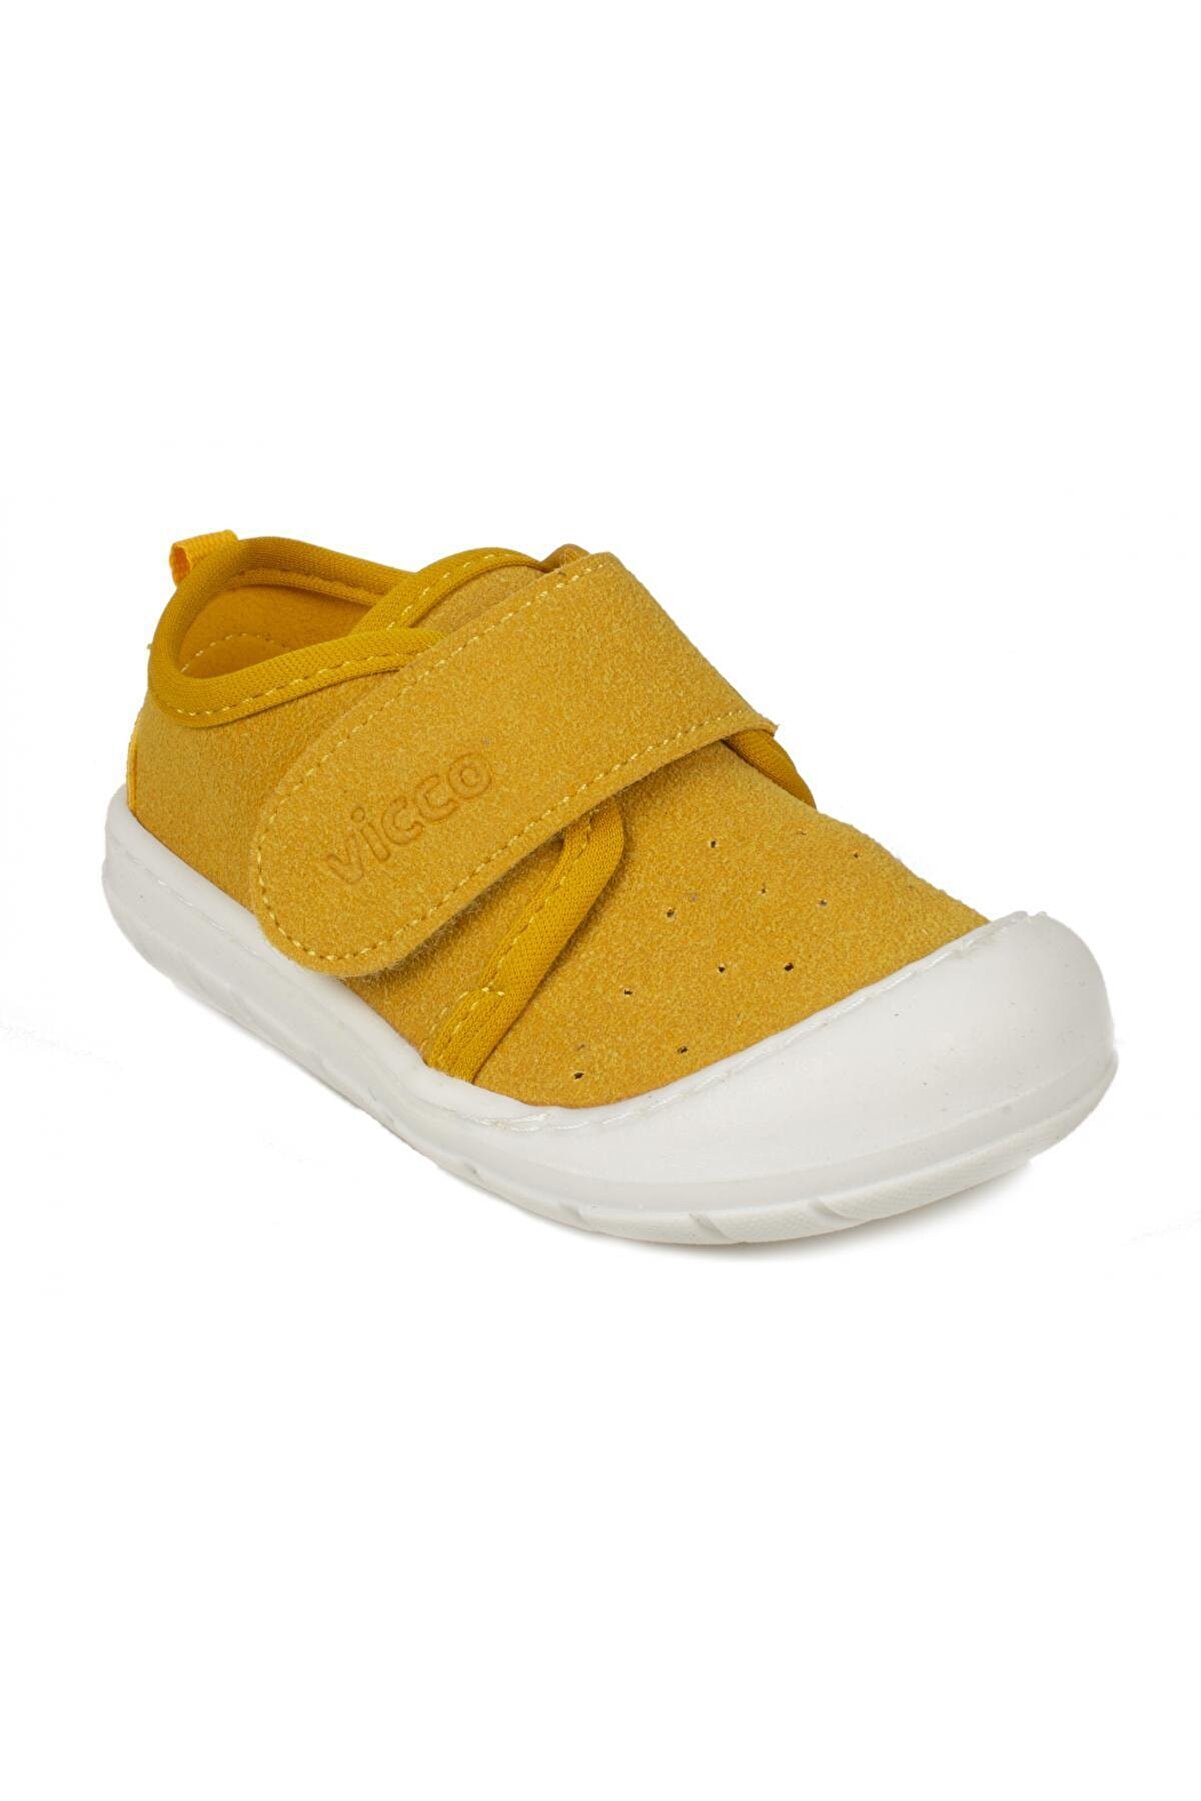 Vicco Sarı - 950.b21k225 Anka Bebe Çocuk Ayakkabı